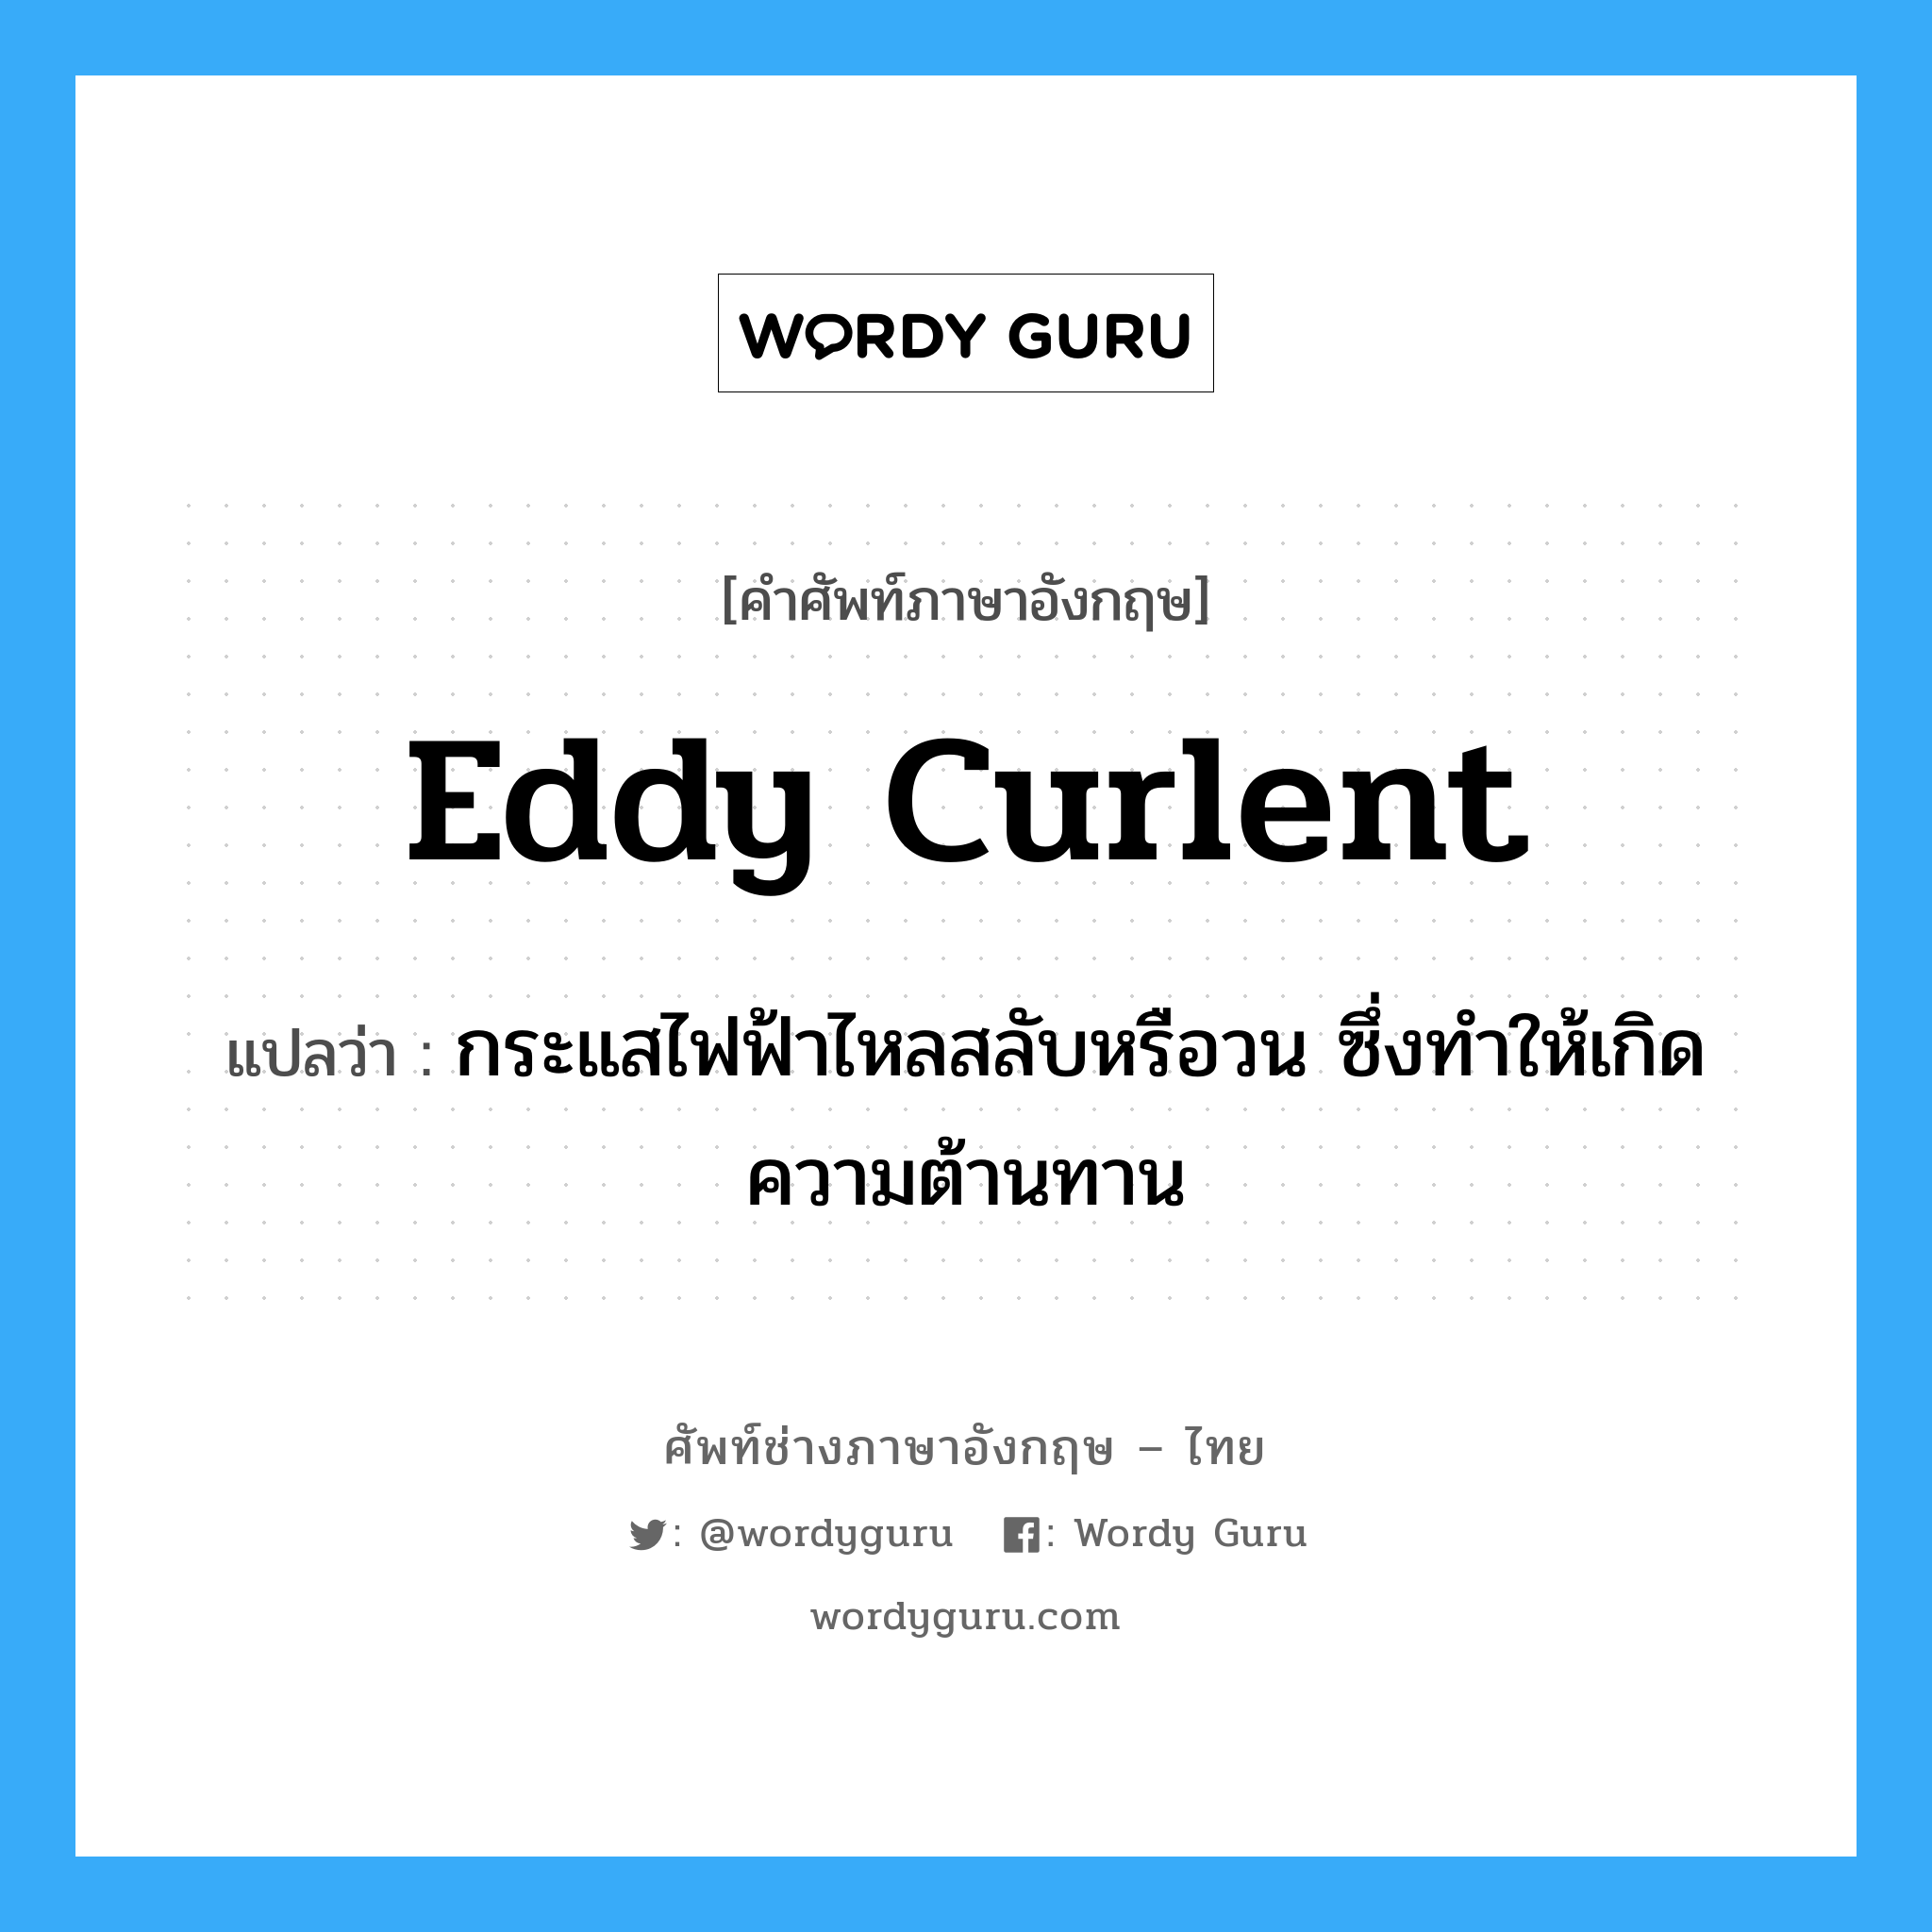 eddy curlent แปลว่า?, คำศัพท์ช่างภาษาอังกฤษ - ไทย eddy curlent คำศัพท์ภาษาอังกฤษ eddy curlent แปลว่า กระแสไฟฟ้าไหลสลับหรือวน ซึ่งทำให้เกิดความต้านทาน